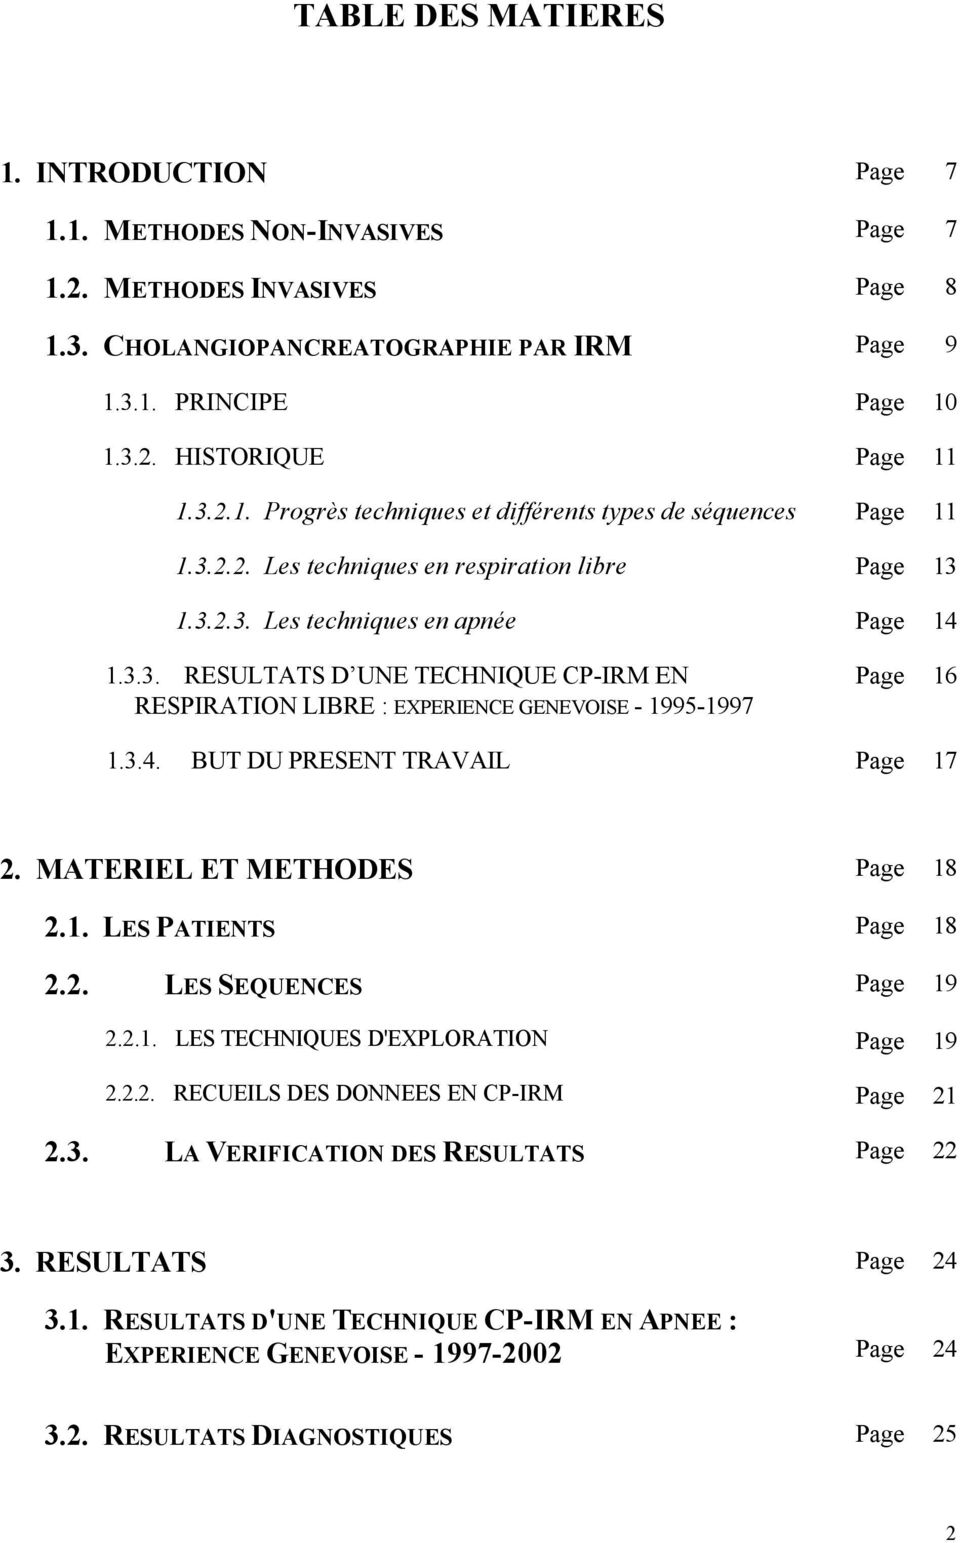 3.4. BUT DU PRESENT TRAVAIL Page 17 2. MATERIEL ET METHODES Page 18 2.1. LES PATIENTS Page 18 2.2. LES SEQUENCES Page 19 2.2.1. LES TECHNIQUES D'EXPLORATION Page 19 2.2.2. RECUEILS DES DONNEES EN CP-IRM Page 21 2.